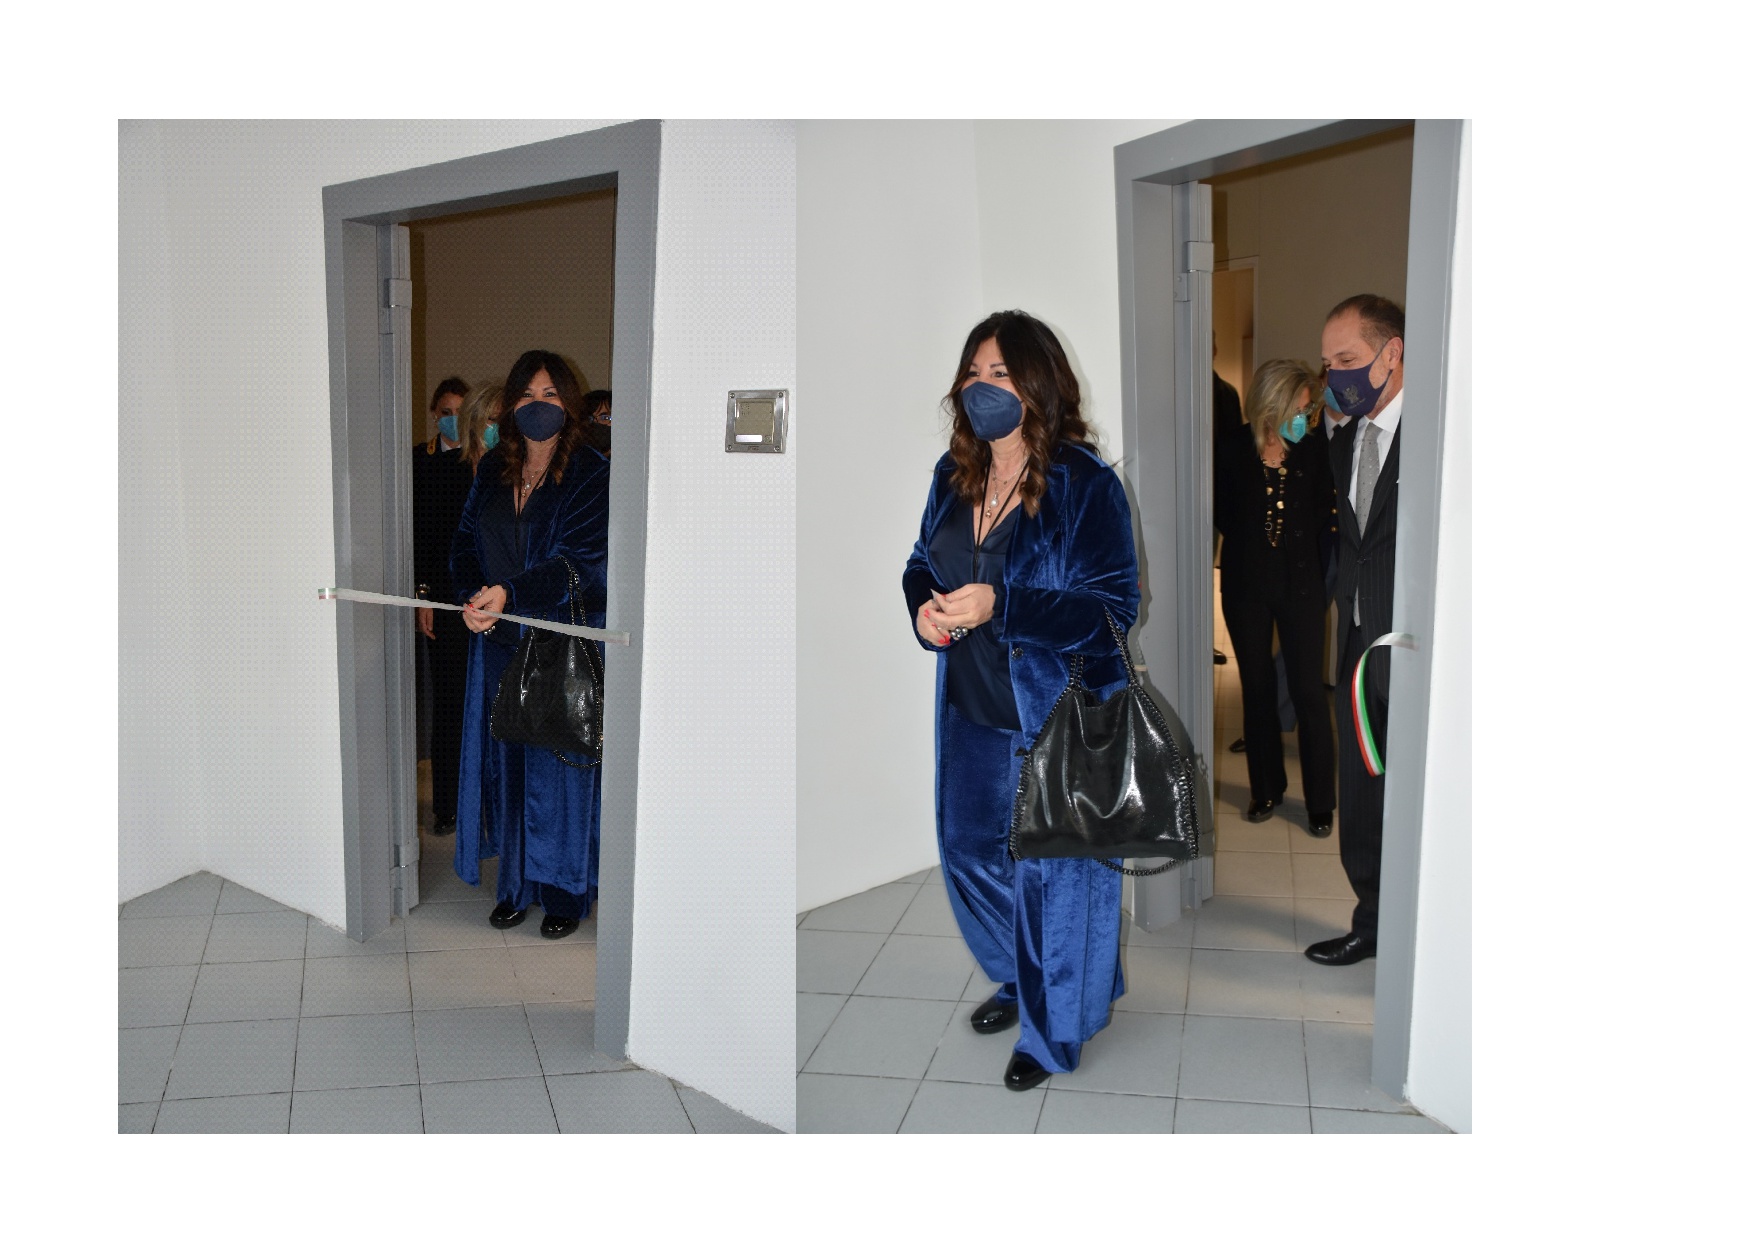 Inaugurazione della nuova “sala d’attesa per persone sottoposte a fermo di Polizia” nella Questura di Arezzo